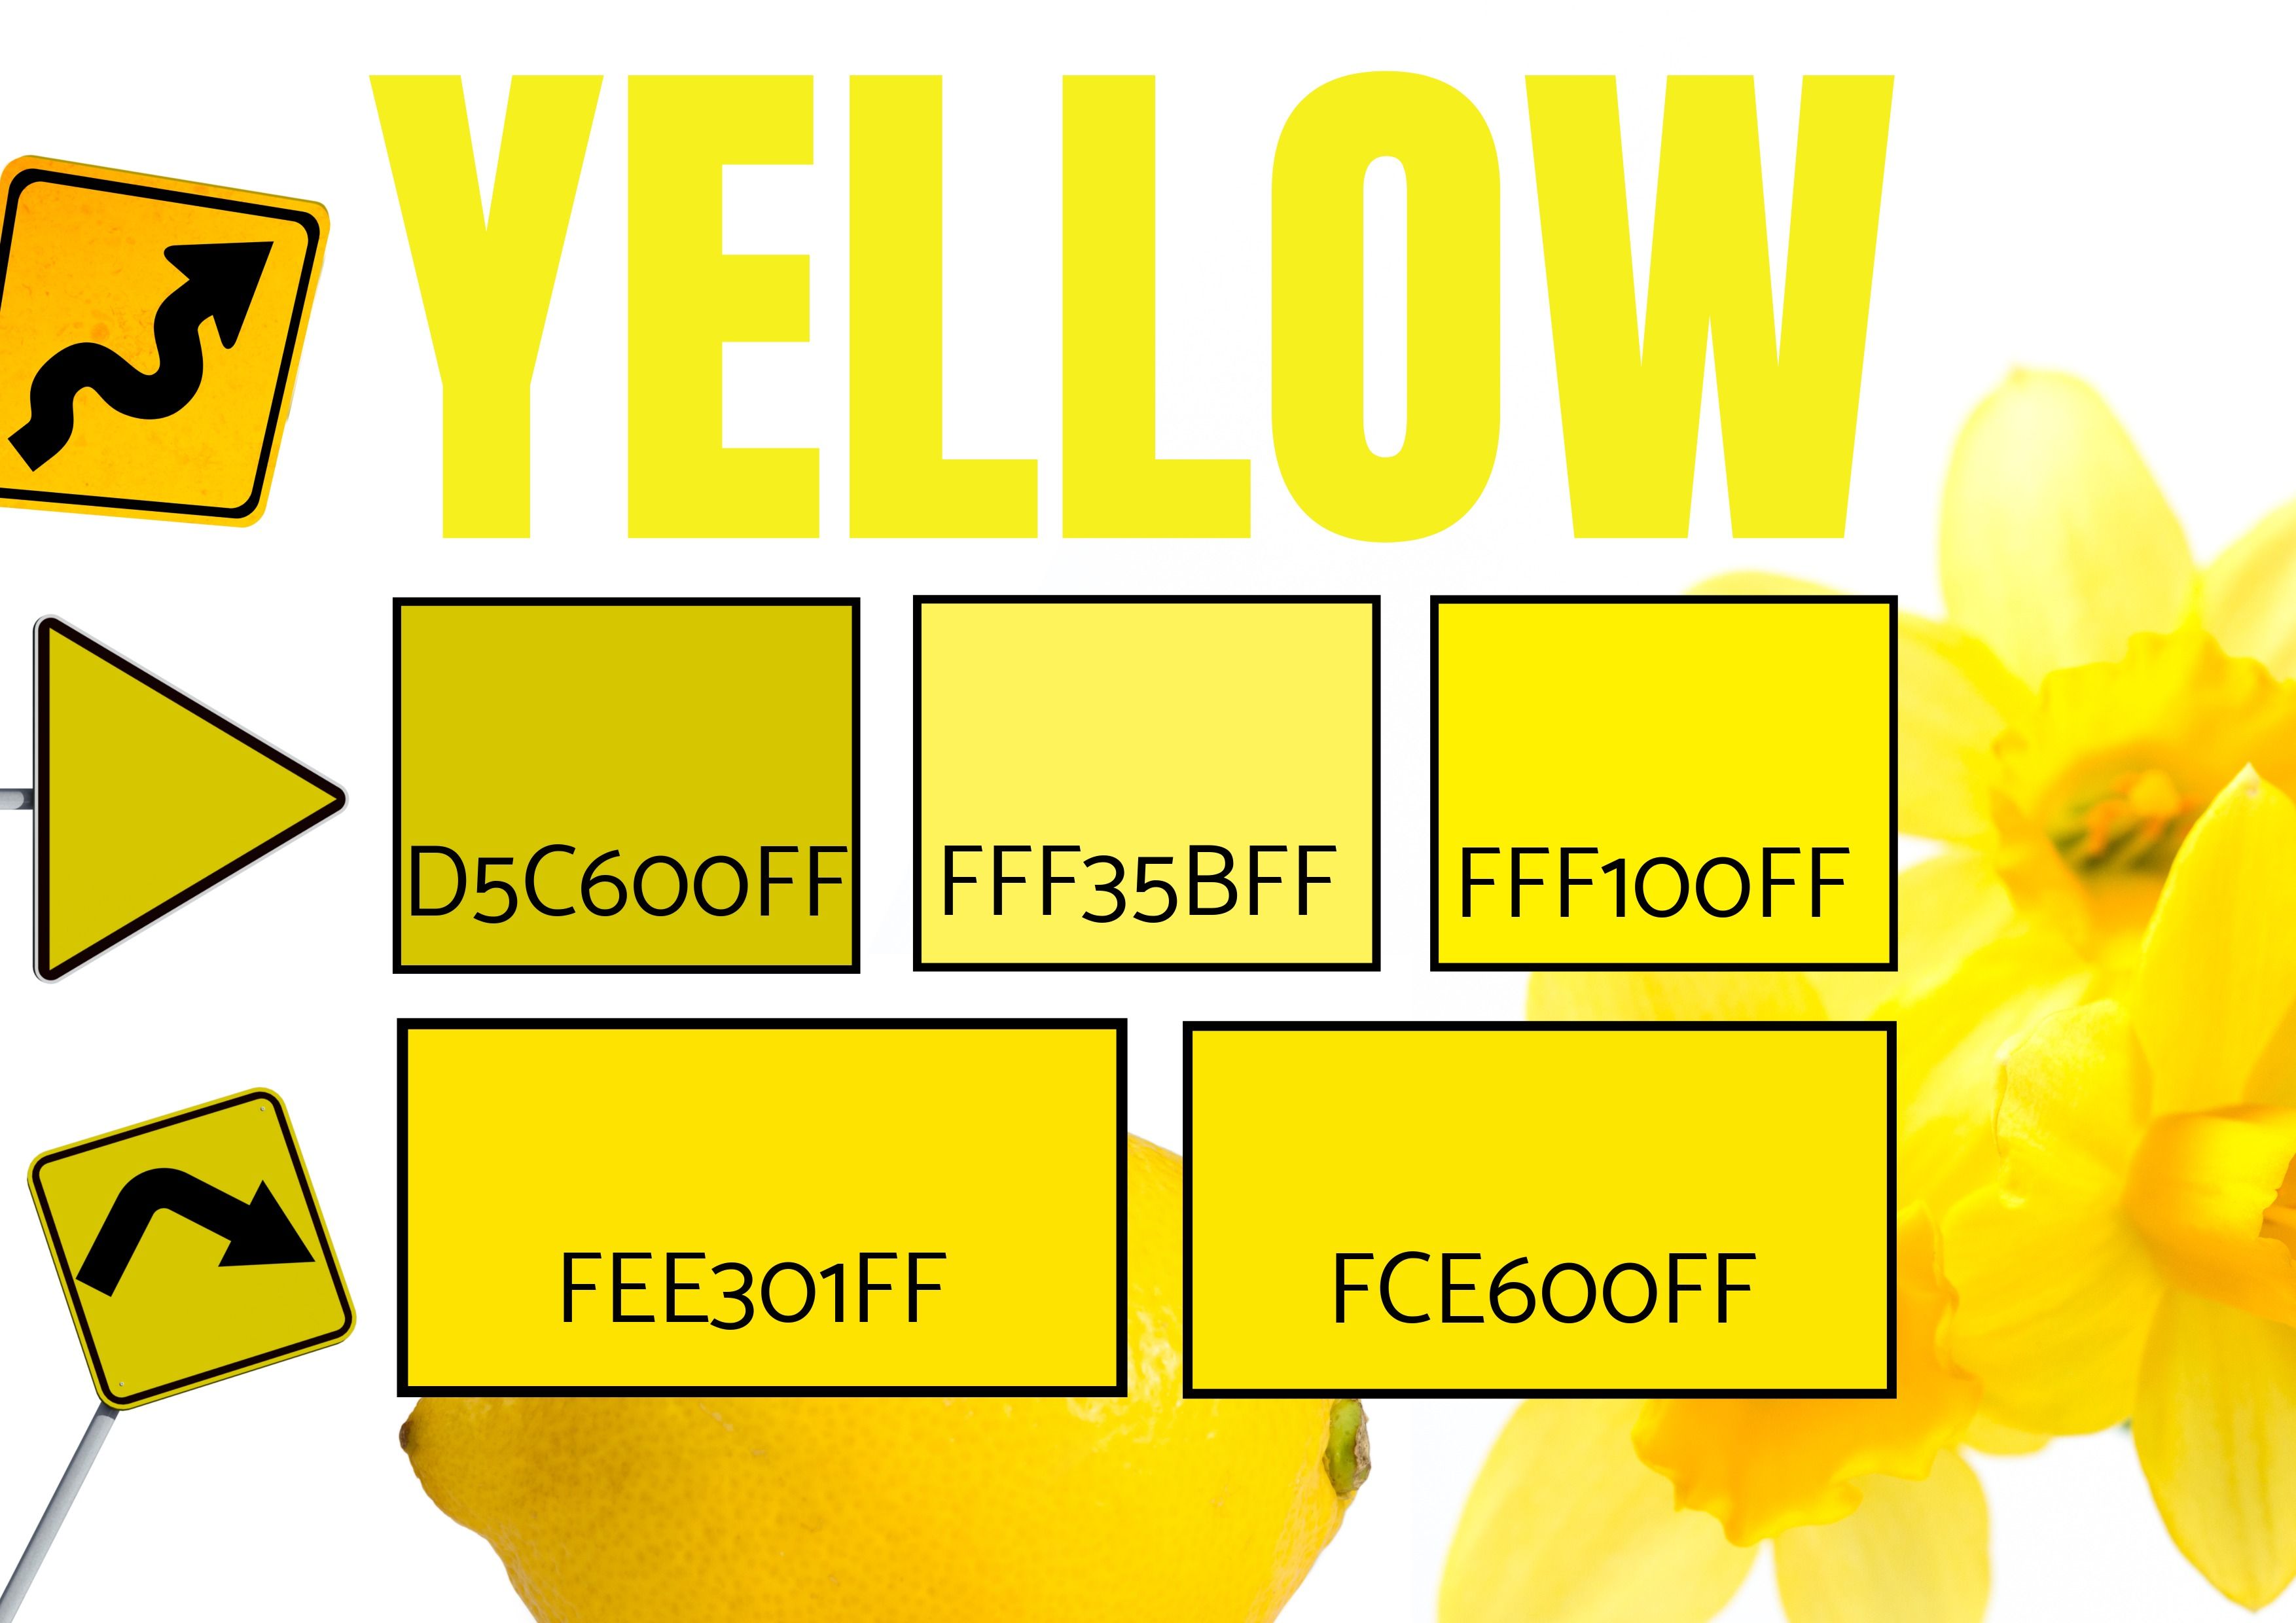 Auswahl von 5 Gelbtönen mit Bildern von Narzissen, Verkehrswarnschildern und einer Zitrone – Symbolik